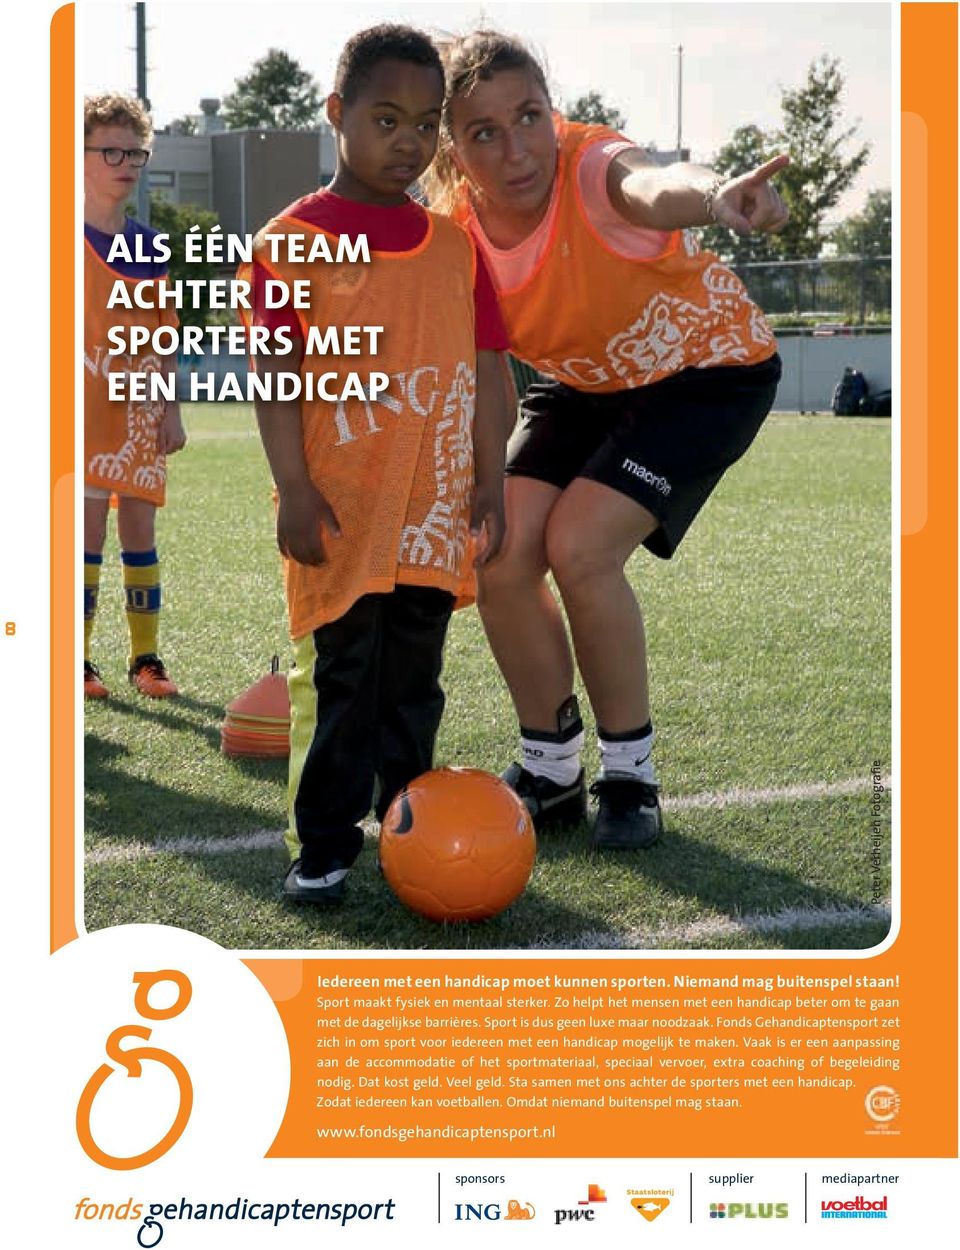 Fonds Gehandicaptensport zet zich in om sport voor iedereen met een handicap mogelijk te maken.